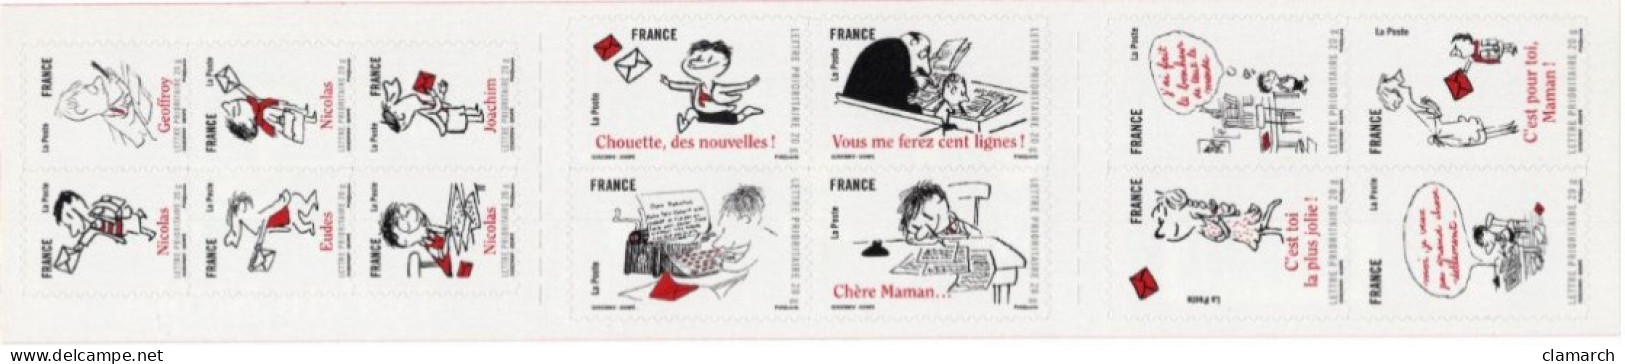 FRANCE NEUF-TàVP-Carnet Sourire Avec Le Petit Nicolas De 2009 N°355-cote Yvert 36.40 - Unused Stamps